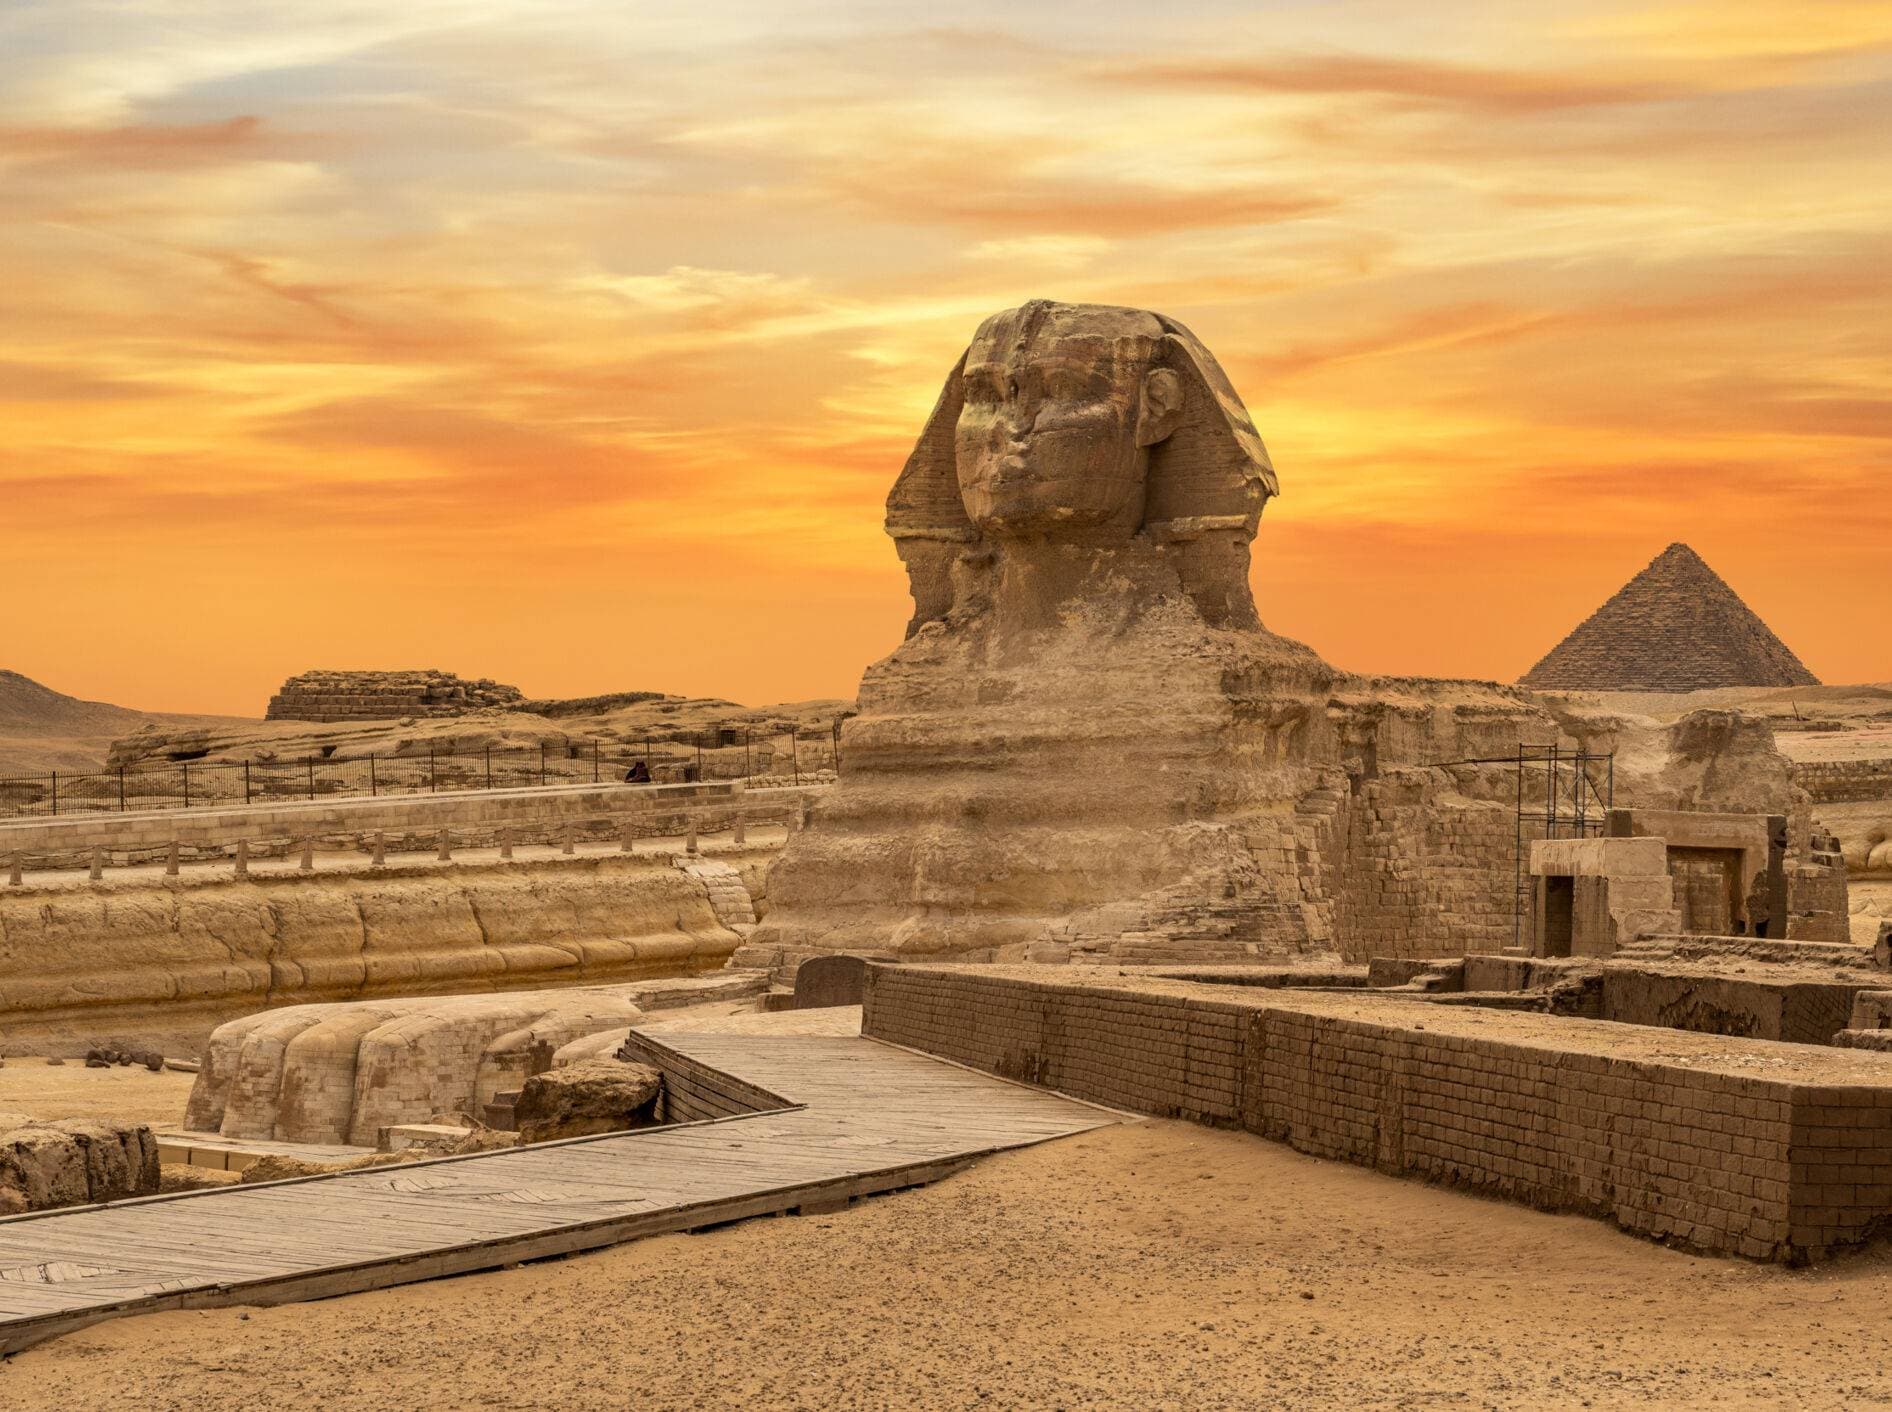 Pyramiden von Gizeh: Beeindruckendes Weltkulturerbe